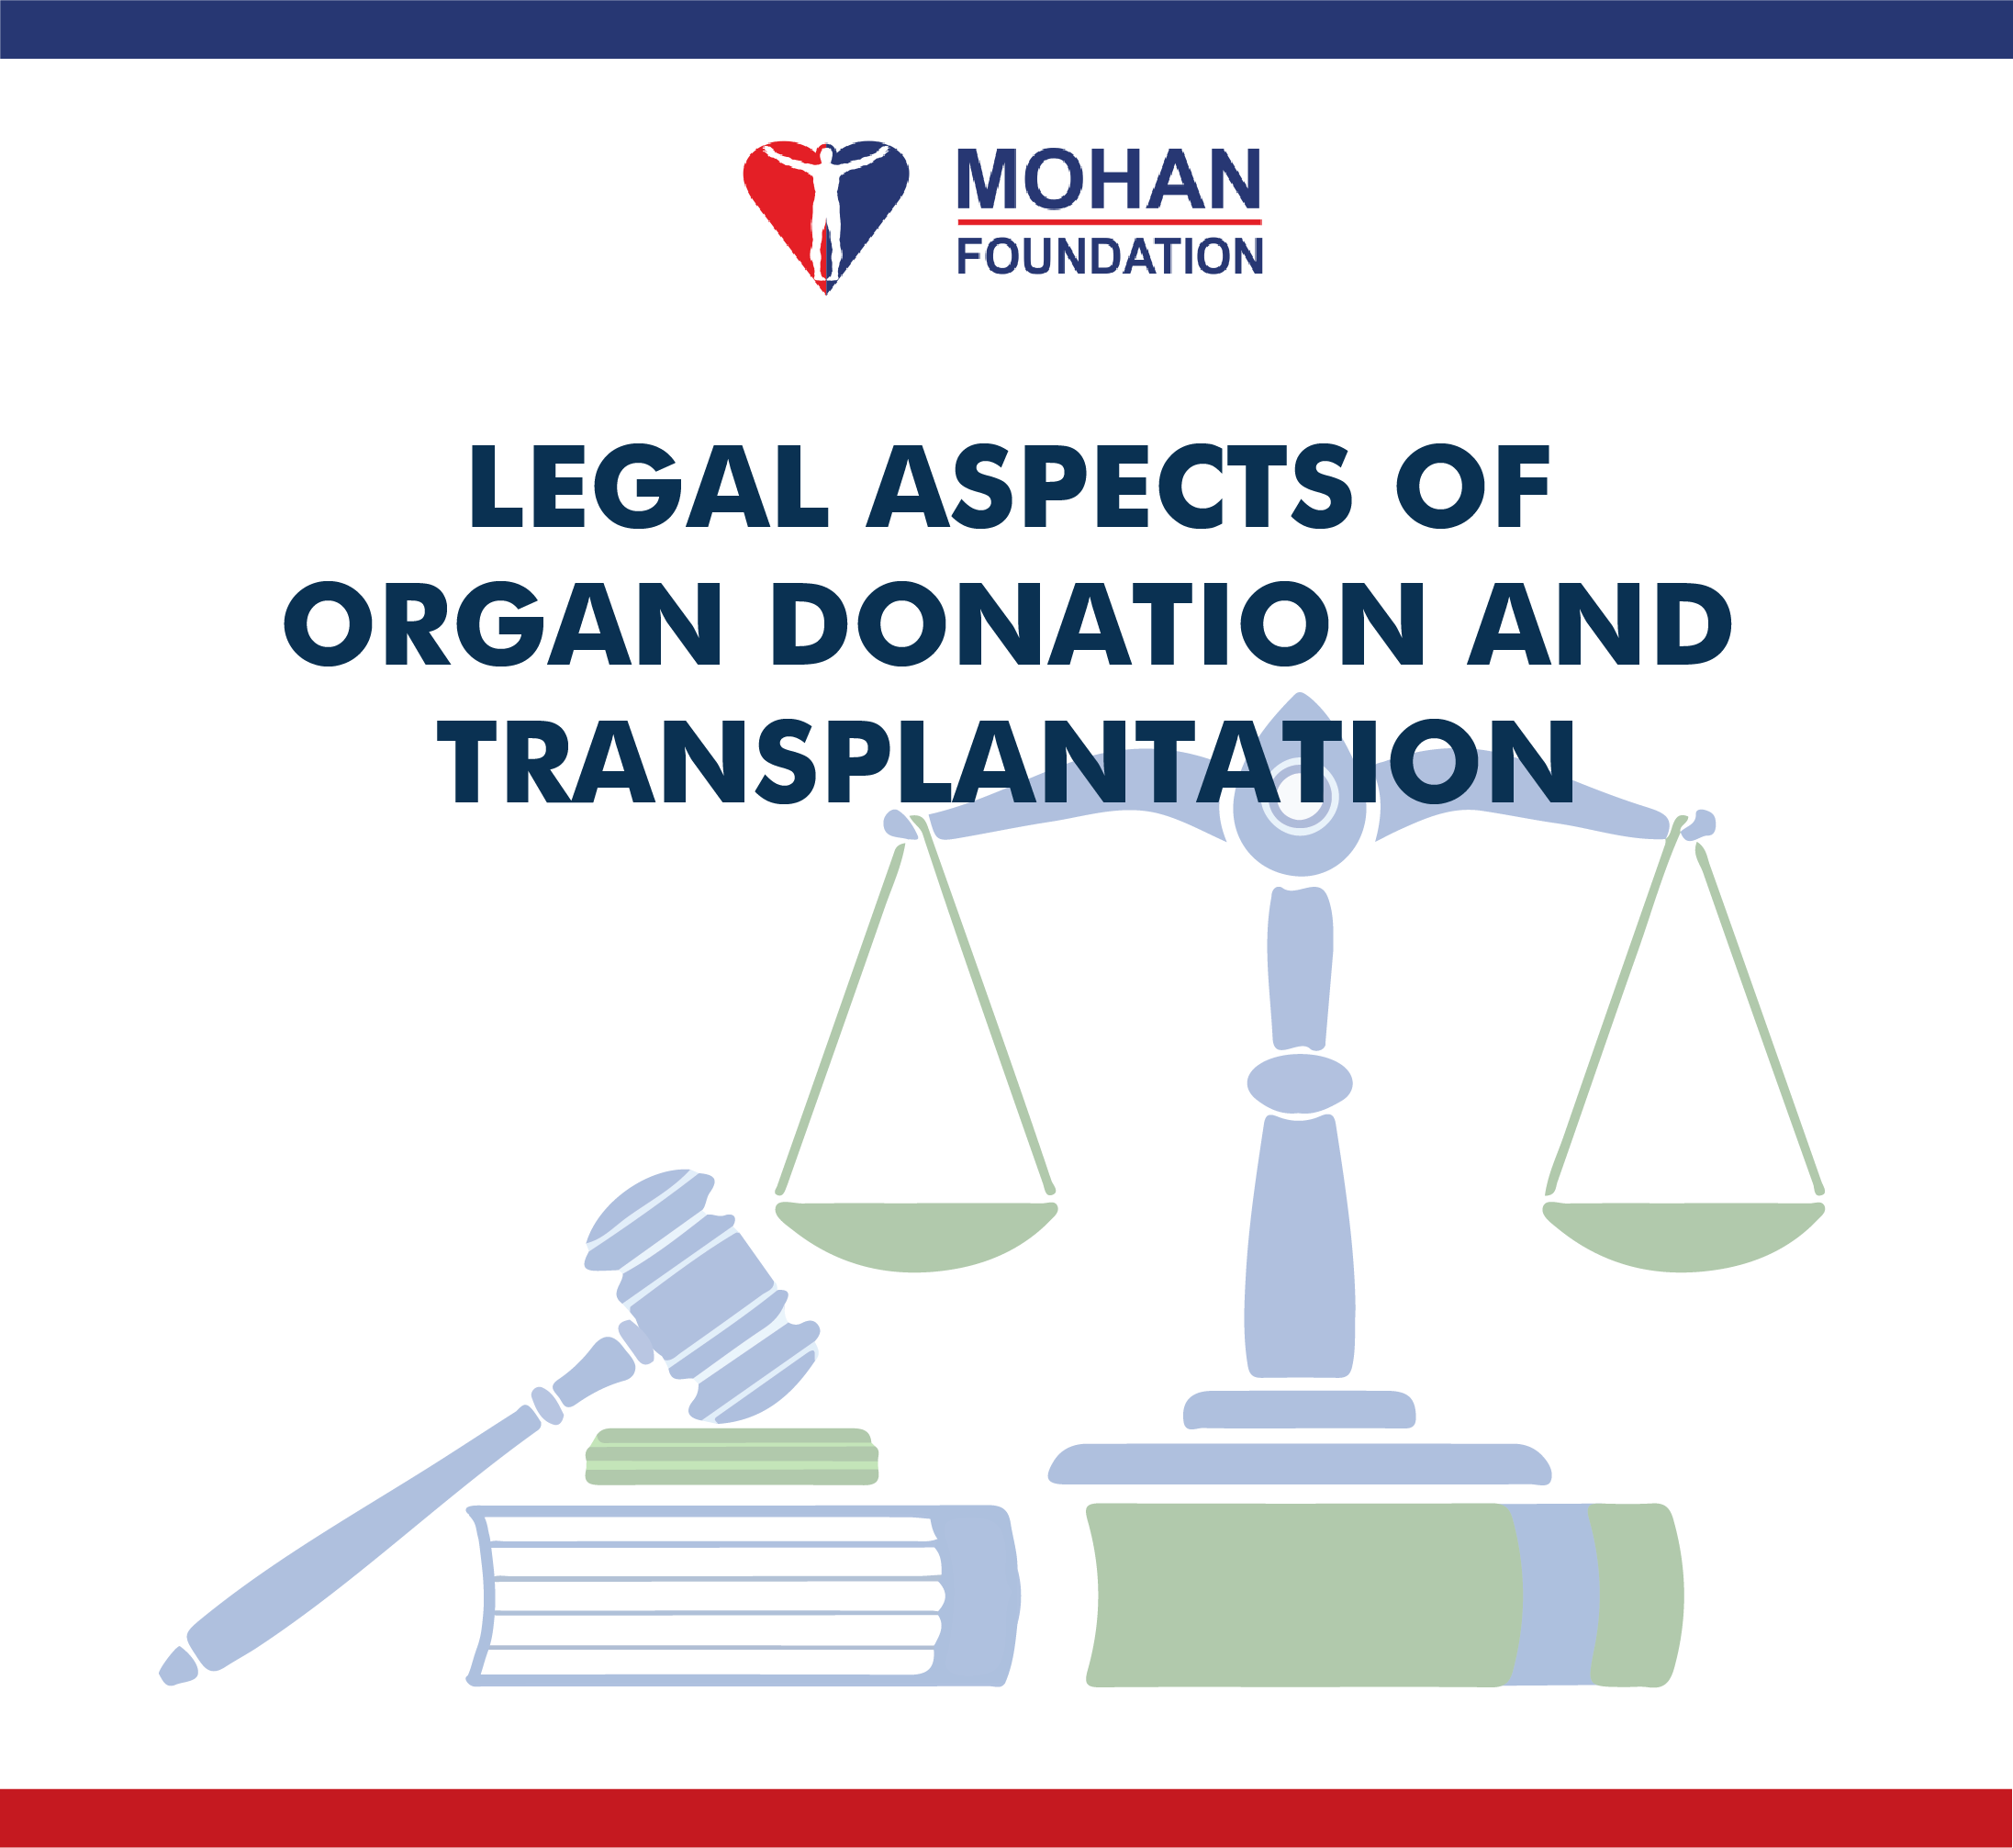 器官捐献与移植的法律问题